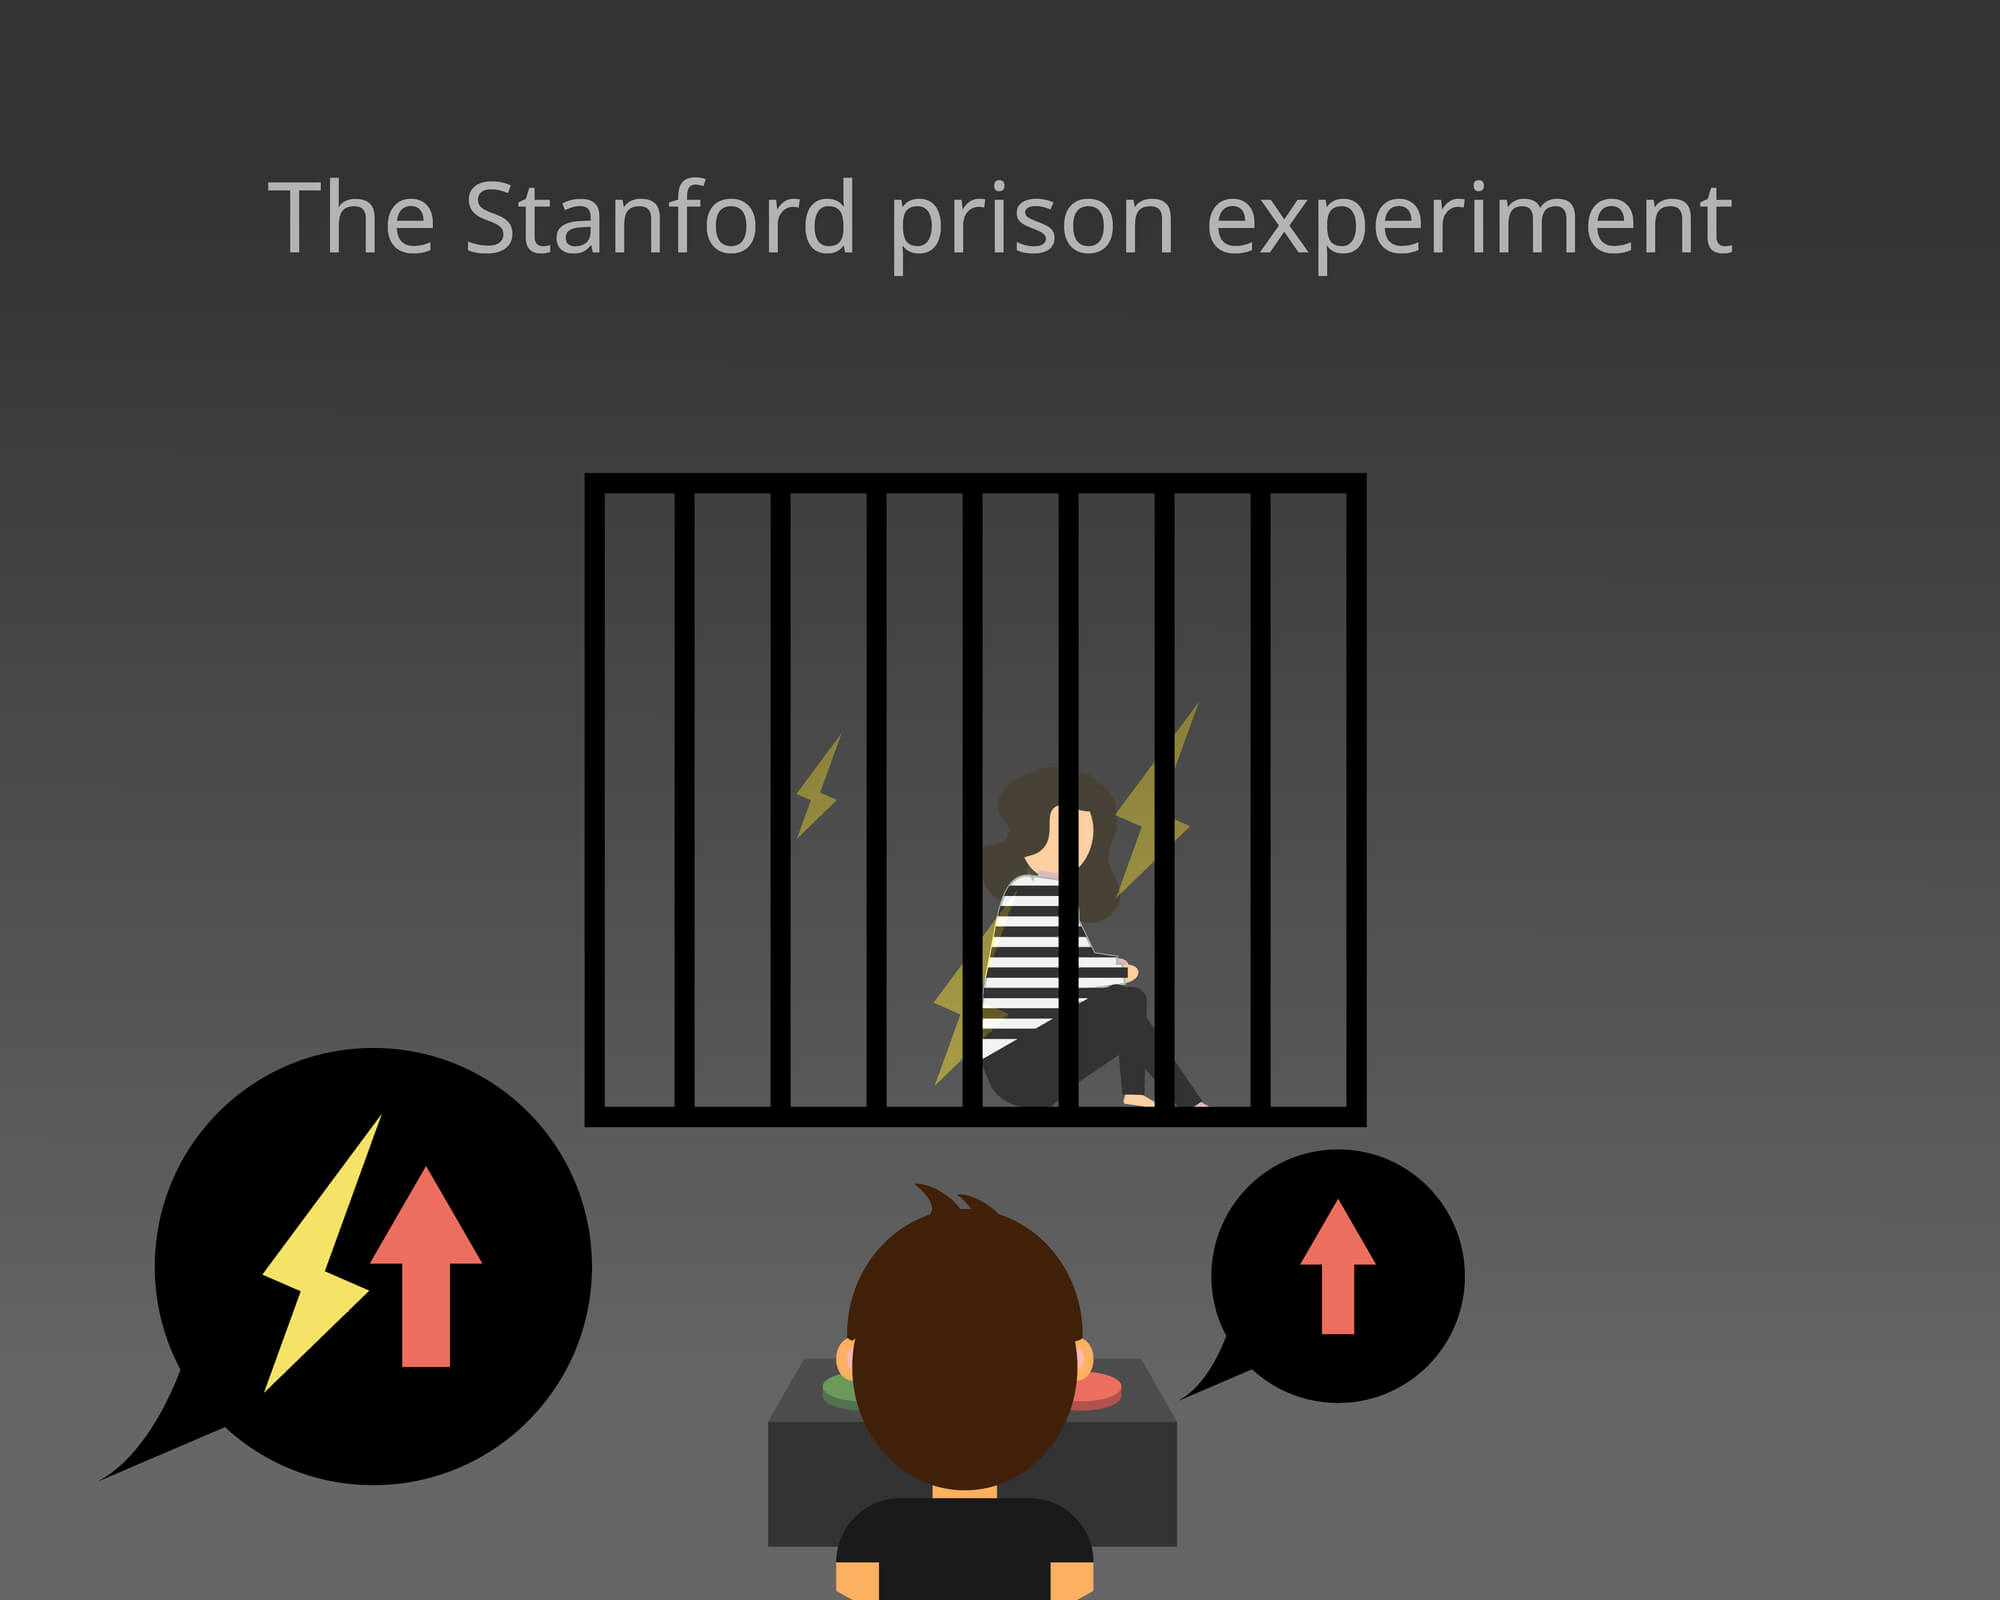 ניסוי הכלא של סטנפורד.  <a href="https://depositphotos.com. ">איור: depositphotos.com</a>